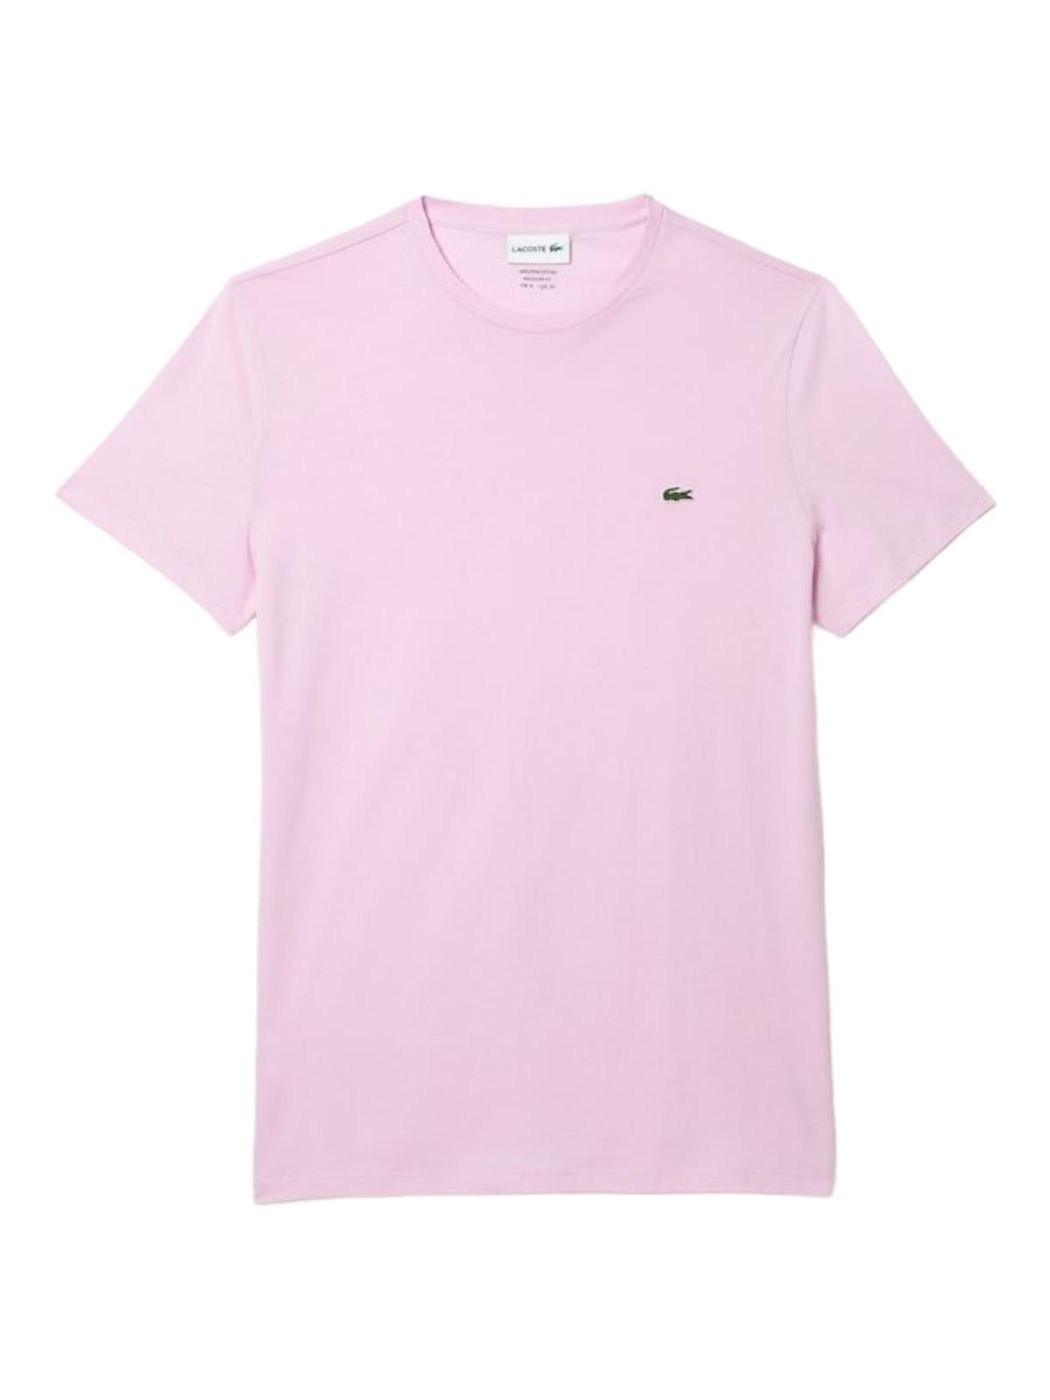 LACOSTE T-Shirt e Polo Uomo  TH6709 Z4H Rosa